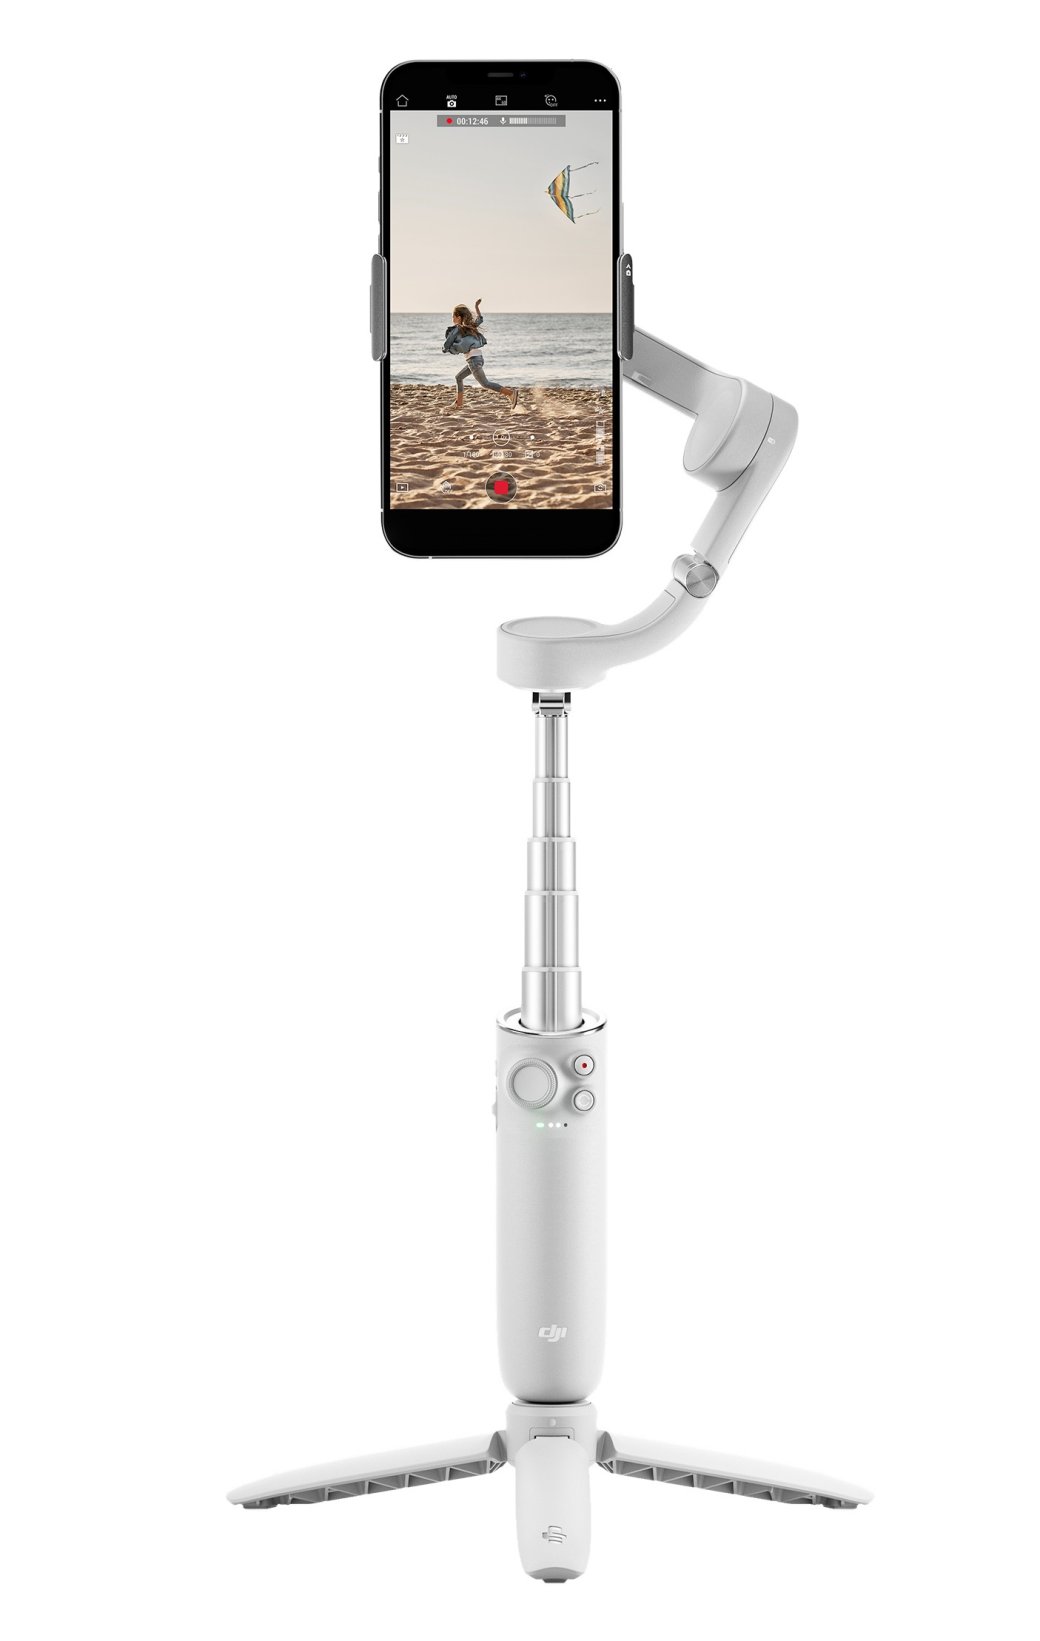 Галерея DJI представила ручной стабилизатор для смартфона OM 5 с палкой для селфи - 2 фото